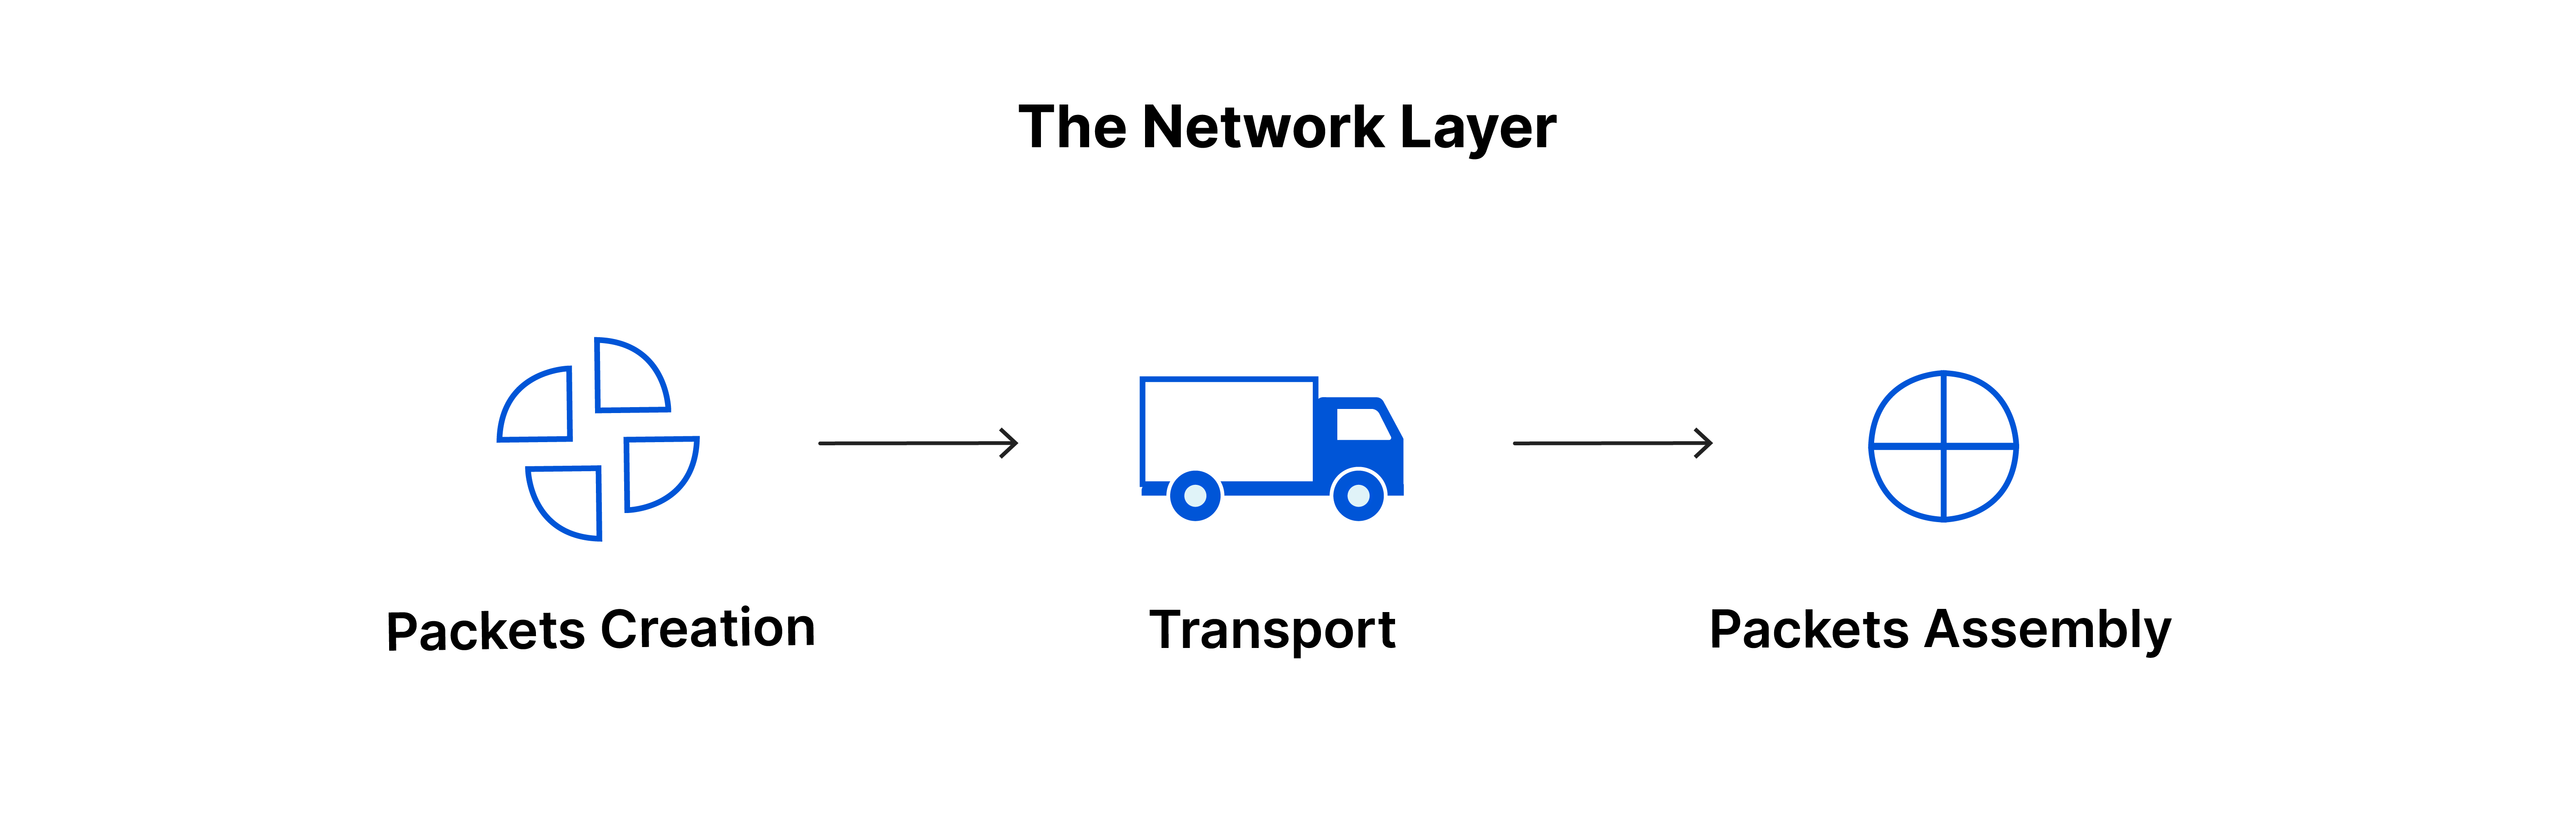 网络层：数据包创建、传输、包组装